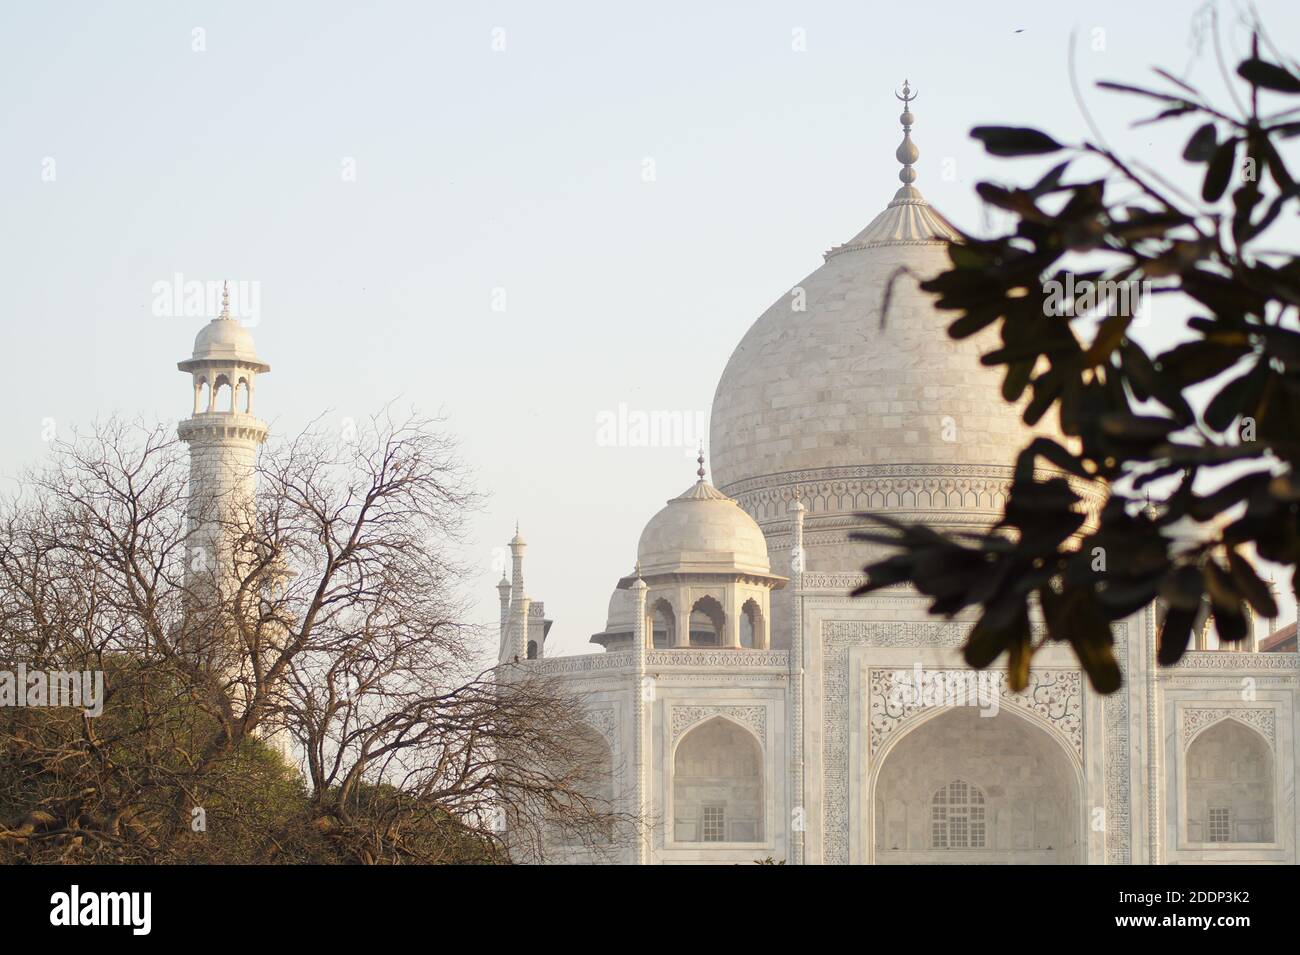 Taj Mahaj, Agra, India- meraviglia del mondo daaaaaaaaaaaaaaaaaaaaaaaaaaaaaaaaaaaaaaaaaaaaaaaaaaaaaaaaaaaaaaaaaaaaaaaaaaaaaaaaaaaaaaaaaaaaaaaaaaaaaaaaaaaaaaaaaaaaaaaaaaaaaaaaaaaaaaaaaaaaa Foto Stock